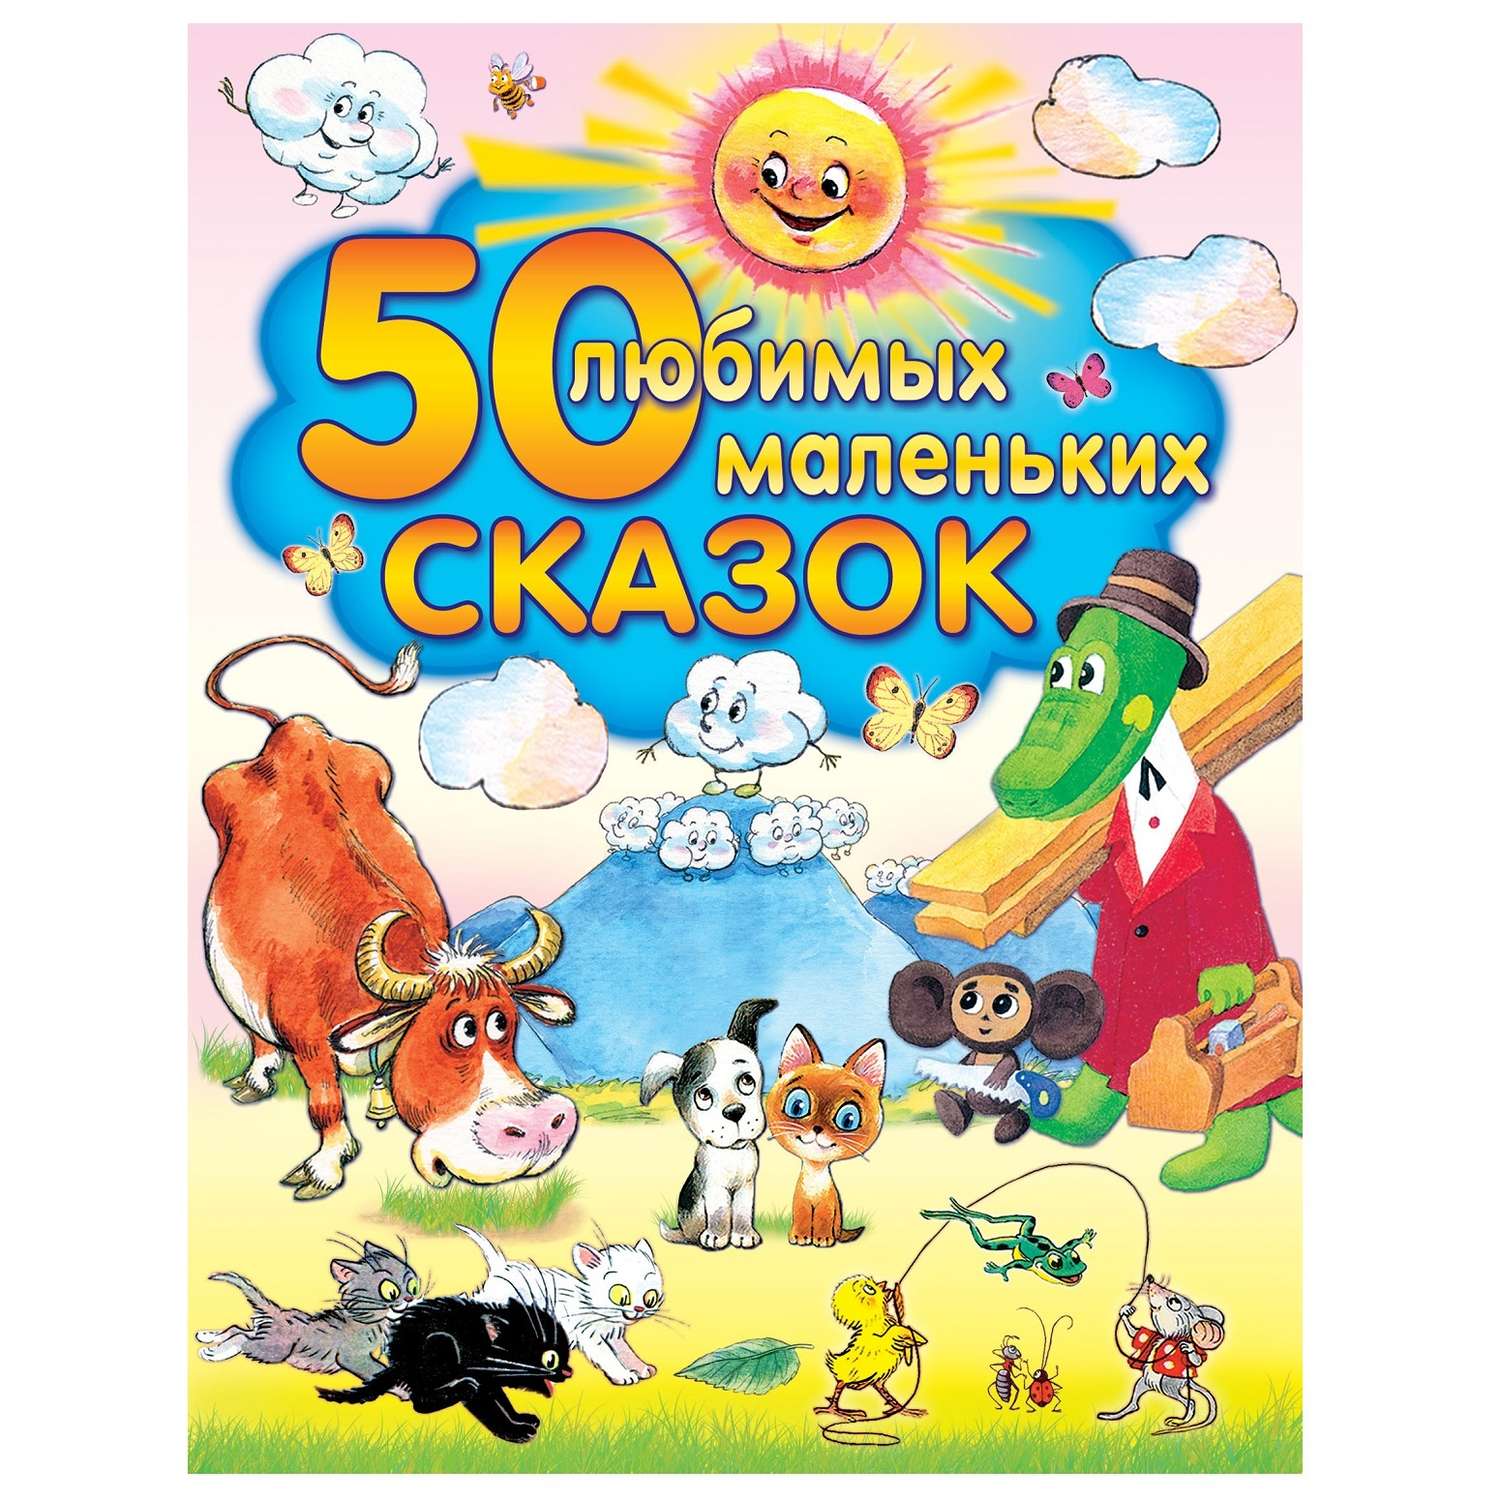 Сказки русские АСТ 50 любимых маленьких сказок - фото 1